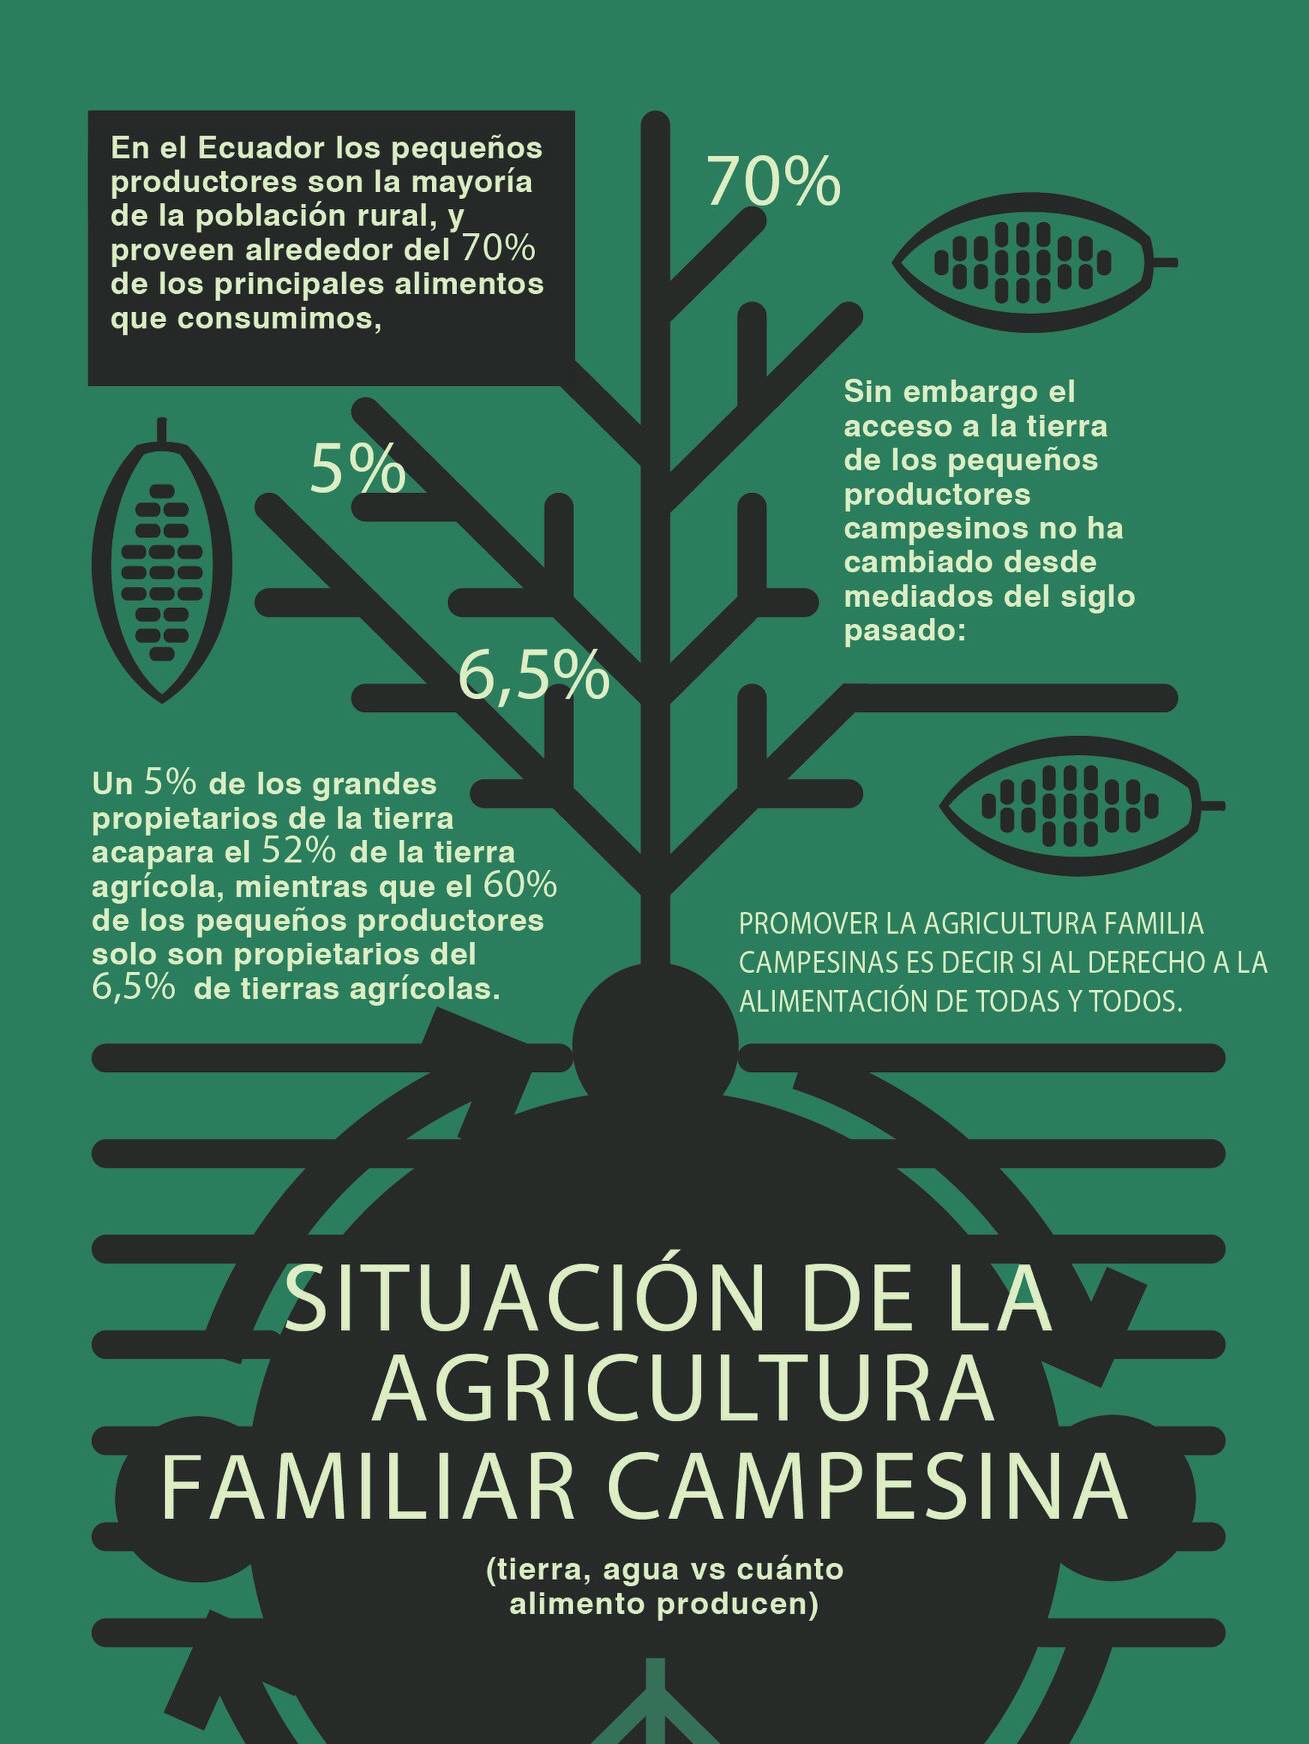 Fian Ecuador On Twitter La Agricultura Familiar Campesina